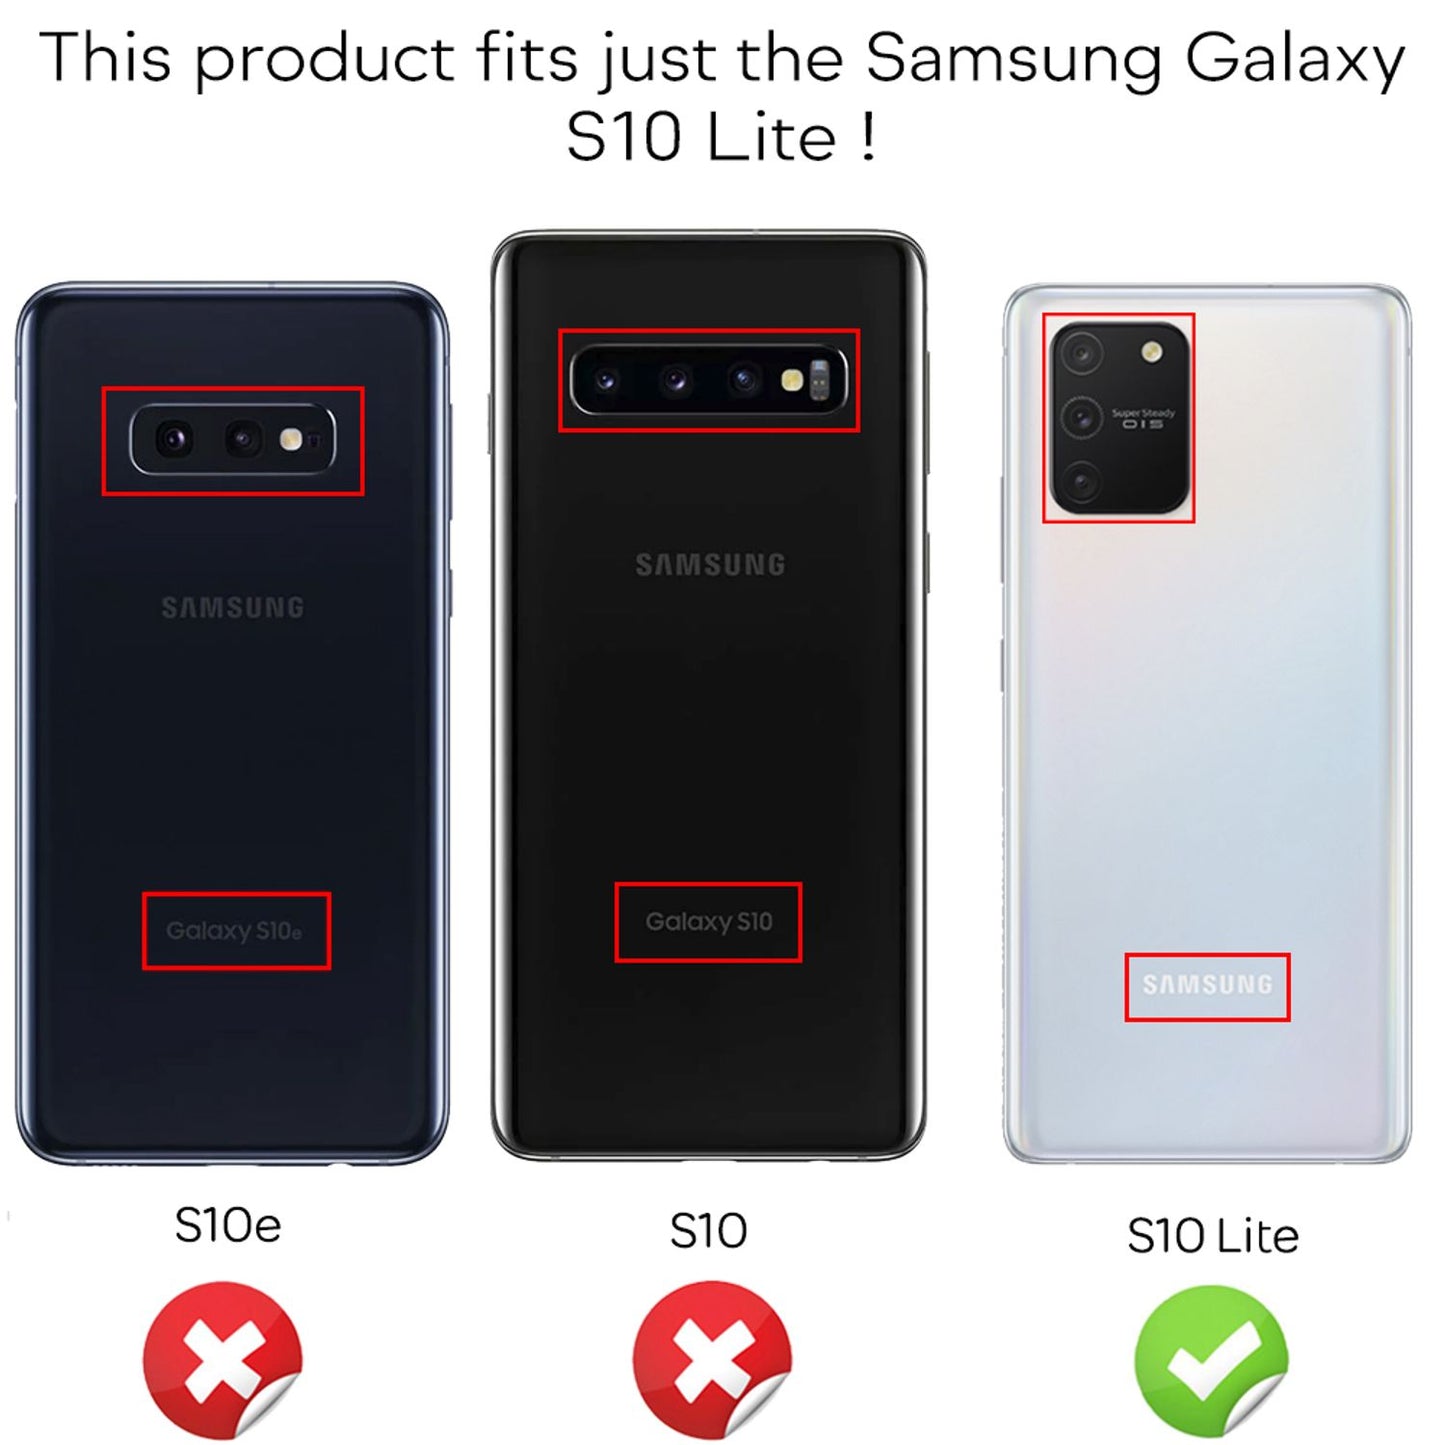 NALIA 360° Handy Hülle für Samsung Galaxy S10 Lite, Full Cover Case Schutz Etui